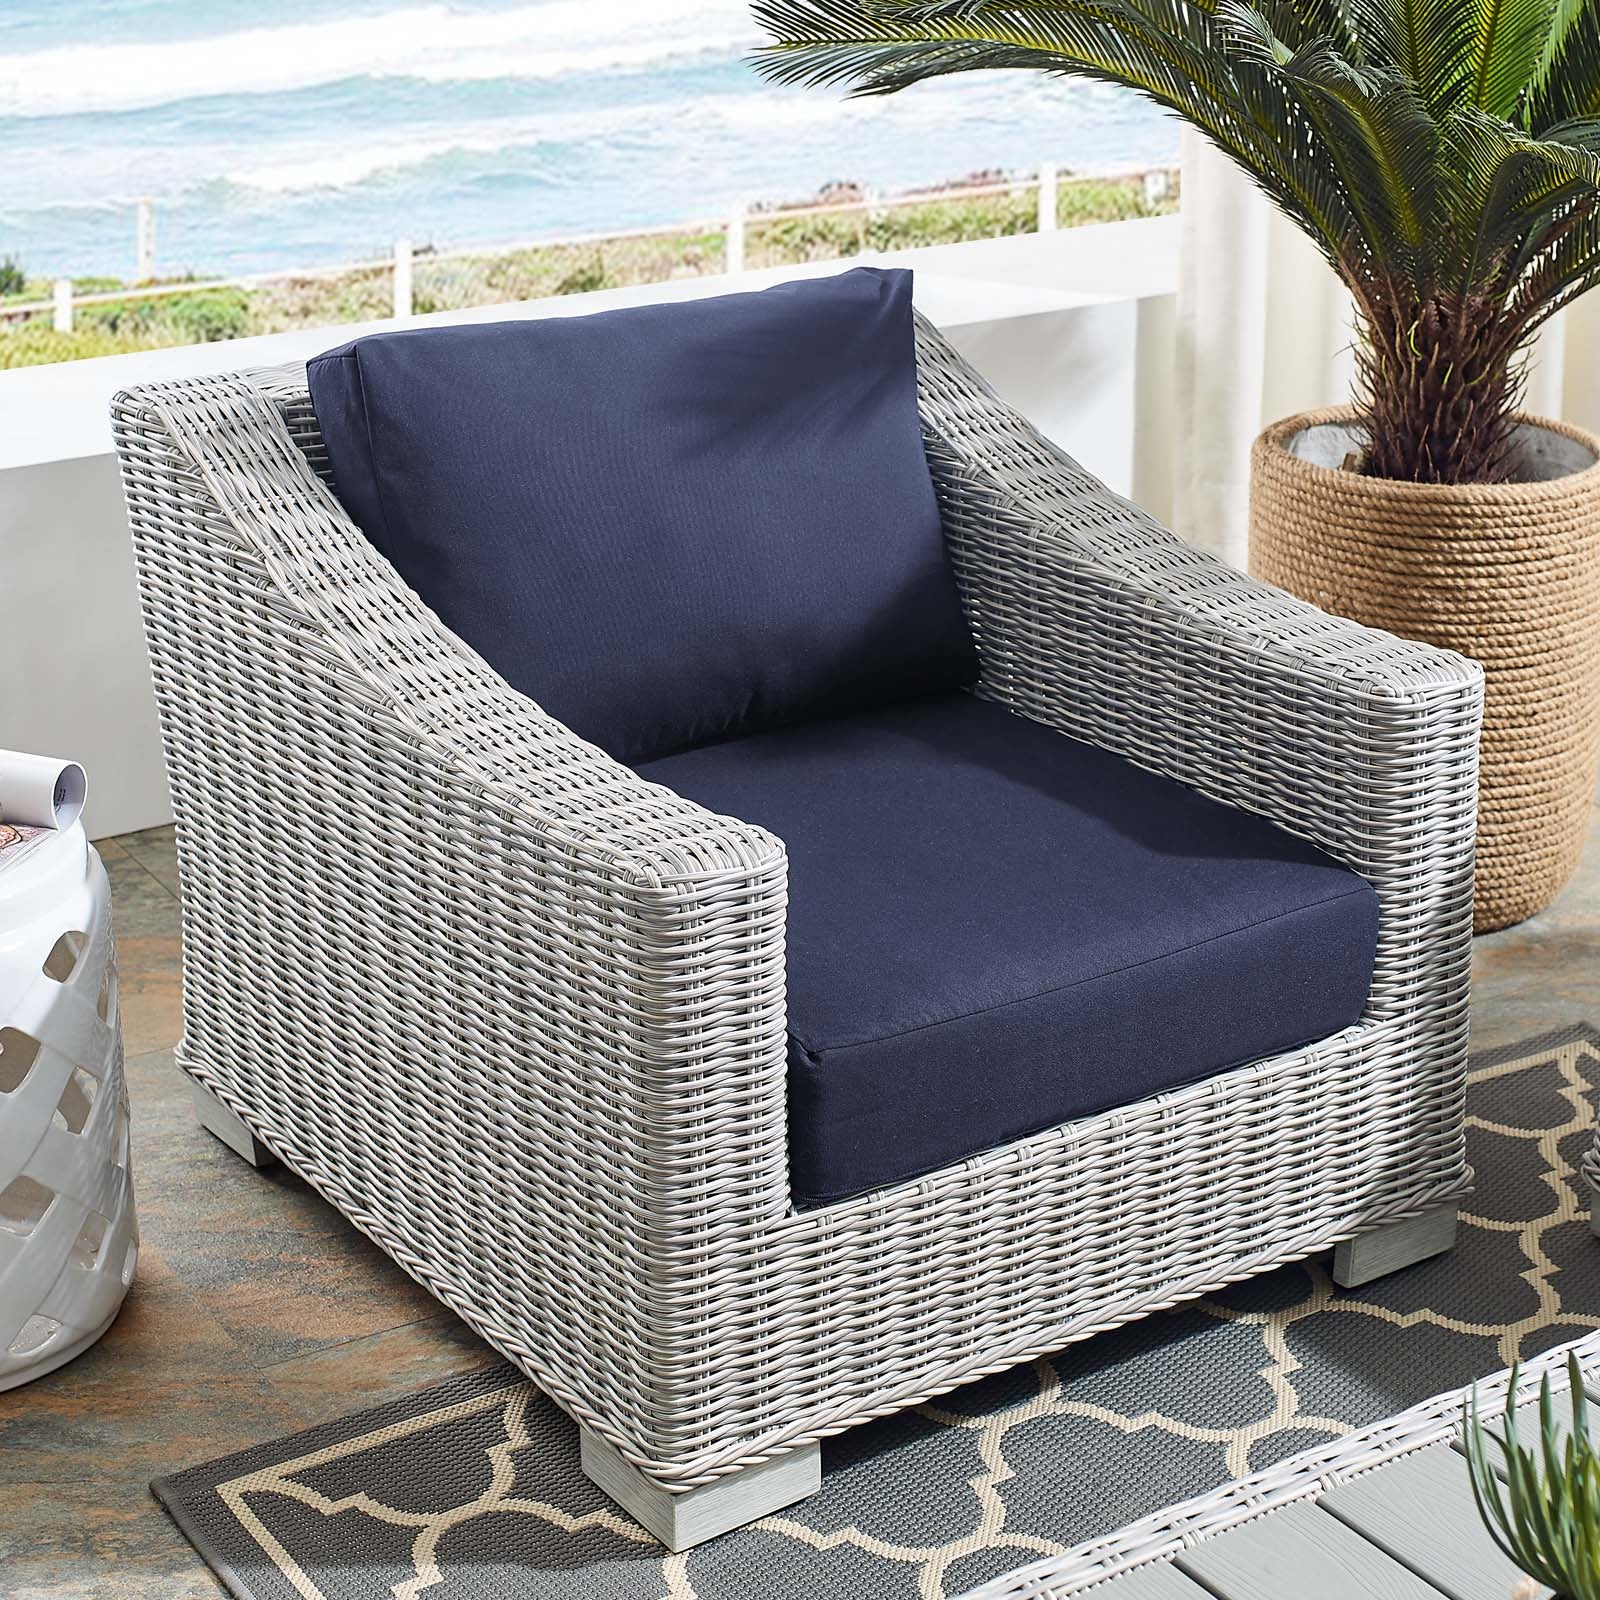 Conway Sunbrella® Outdoor Patio Wicker Rattan Armchair